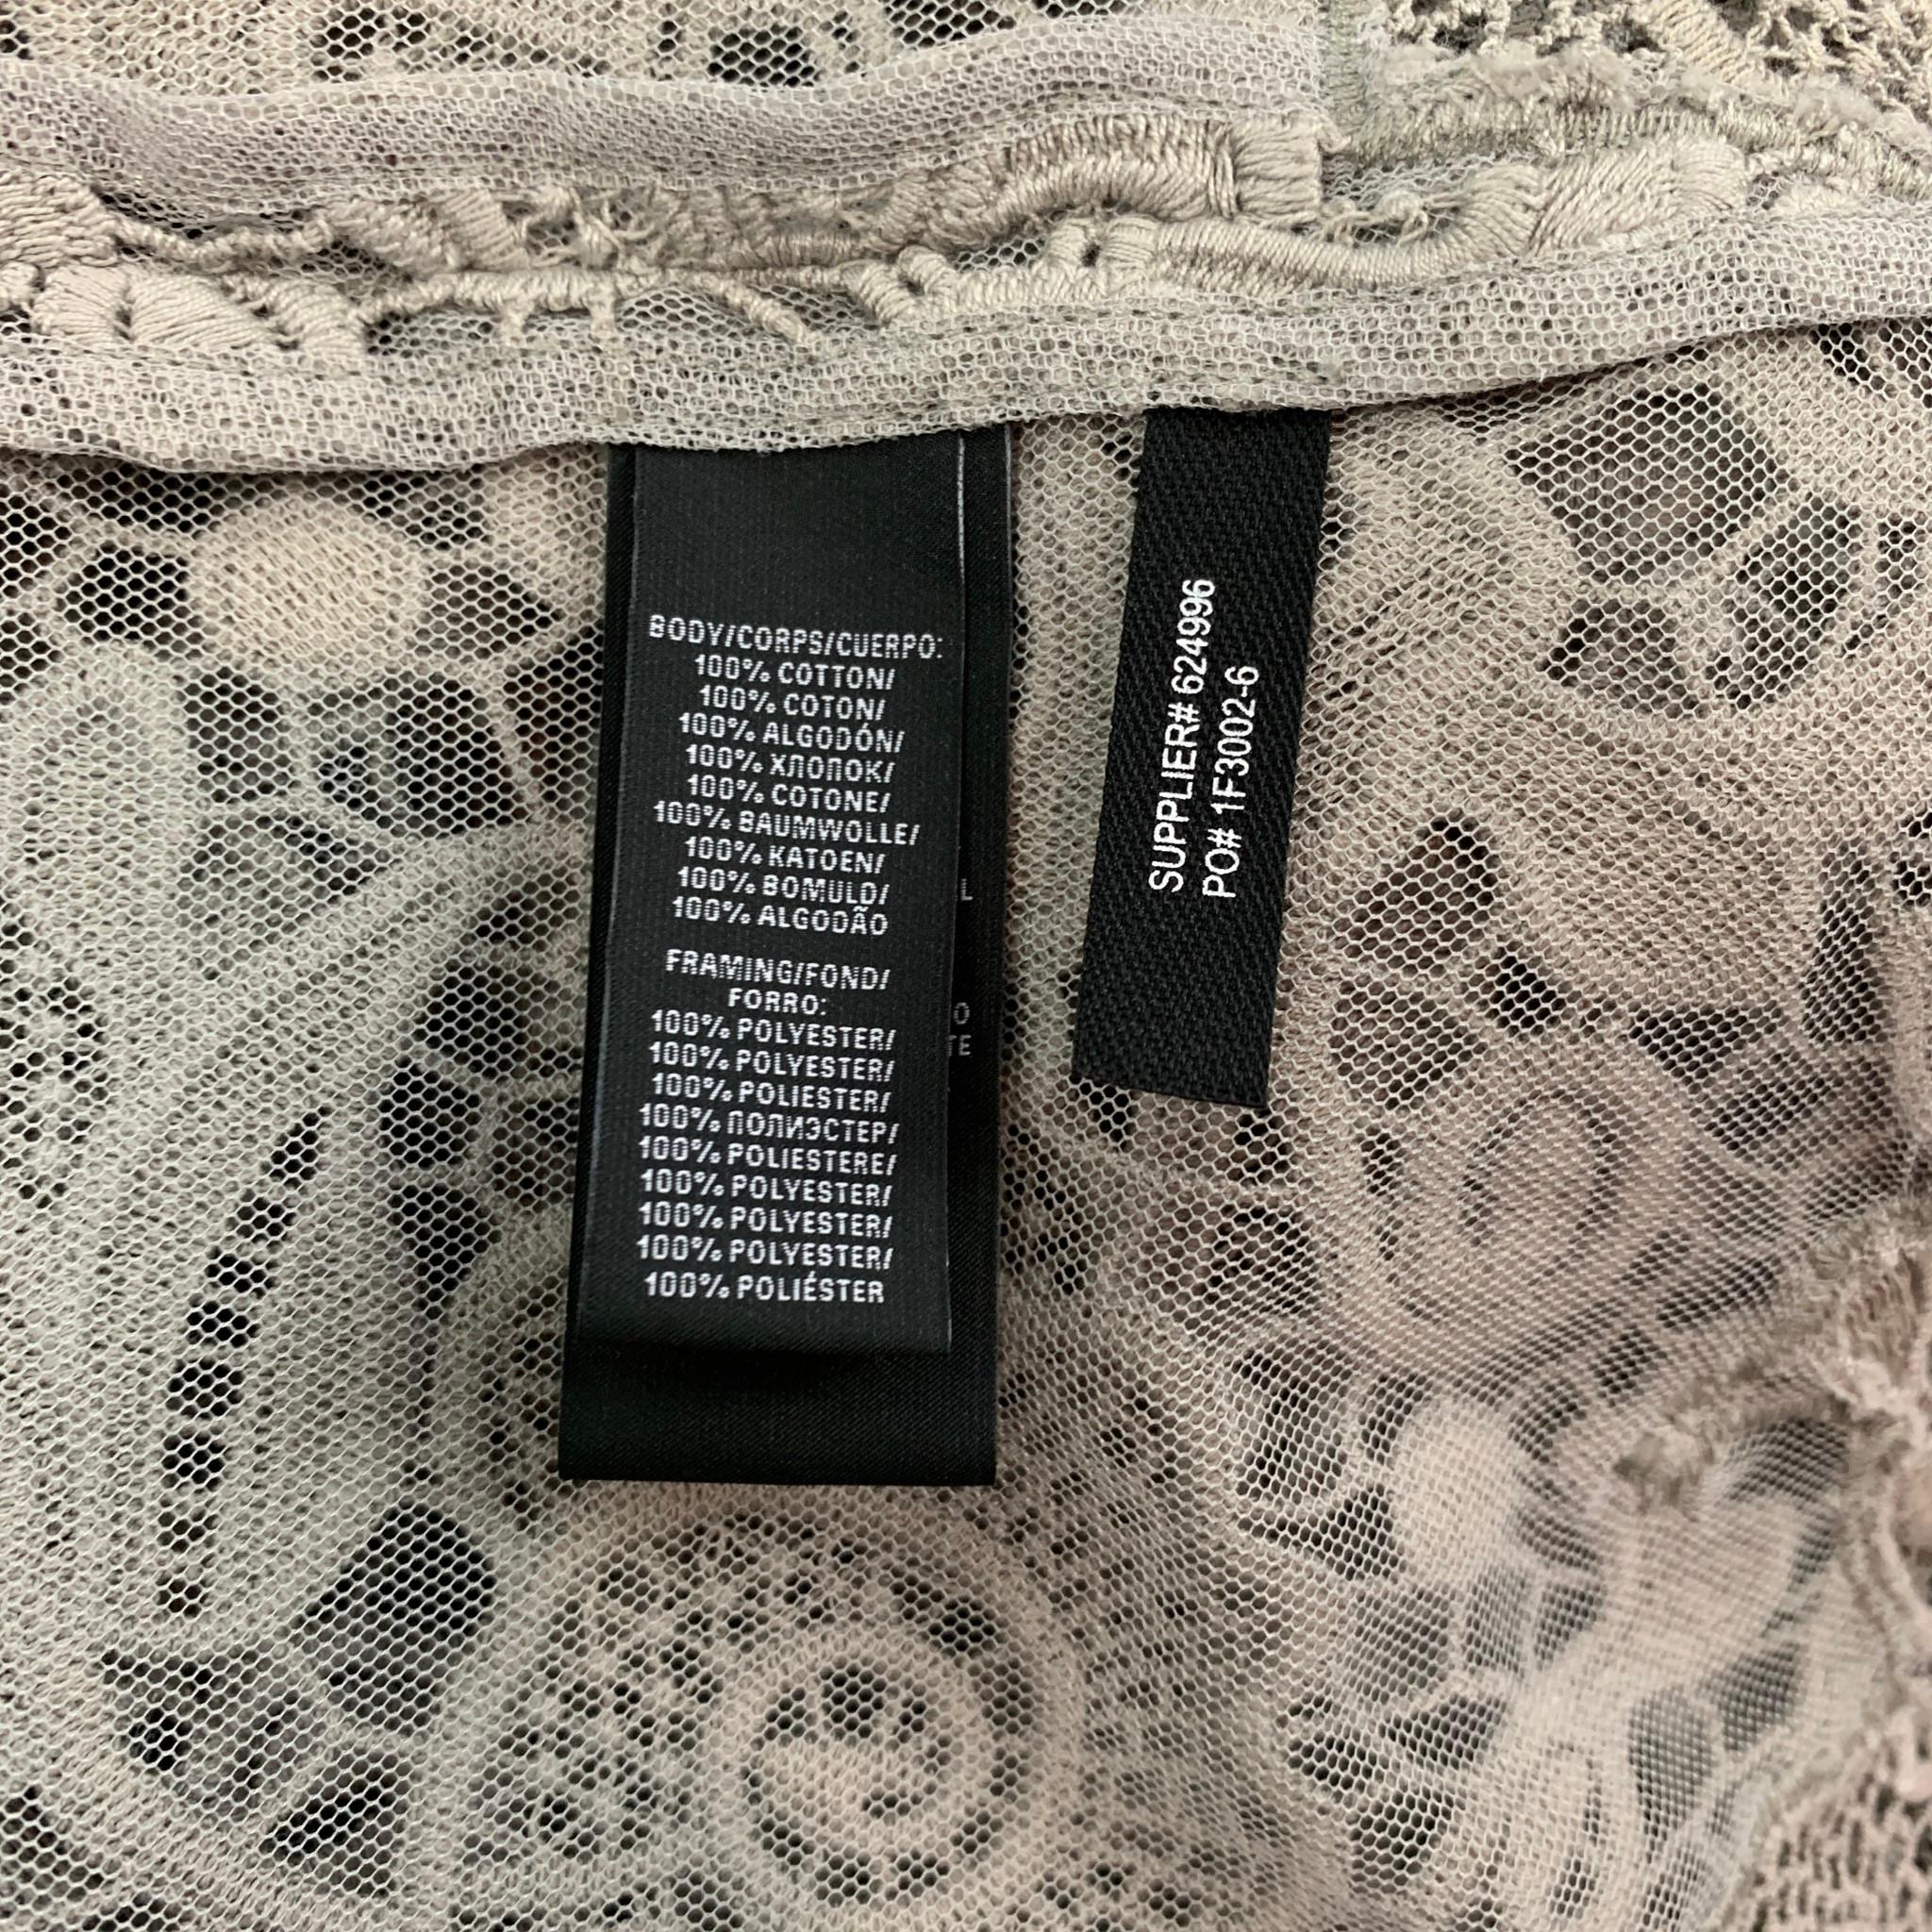 Beige RALPH LAUREN Black Label Size 10 Light Gray Lace Textured Cotton Jacket